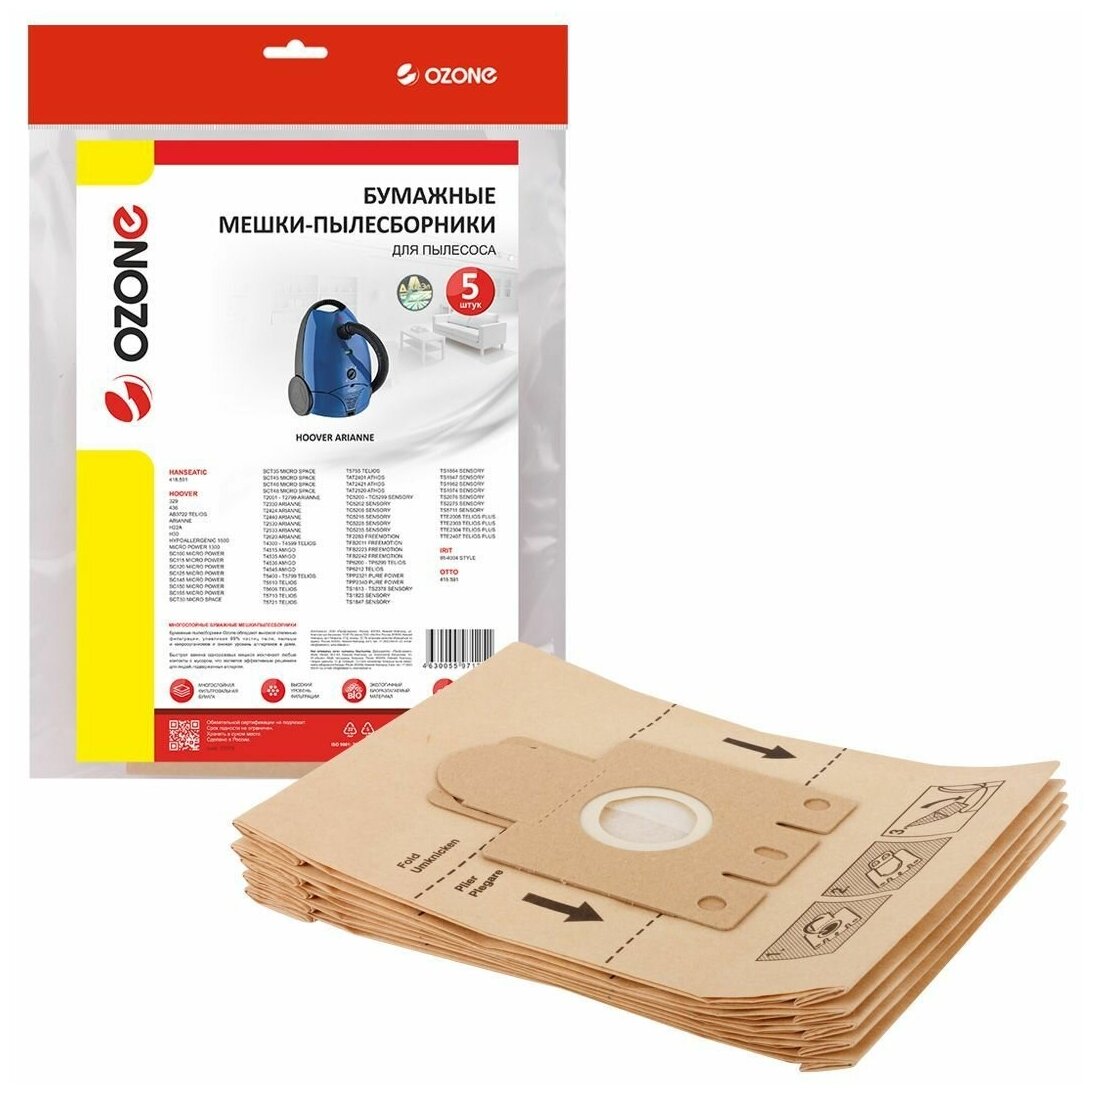 Мешки-пылесборники Ozone бумажные 5 шт для HANSEATIC HOOVER IRIT и др.